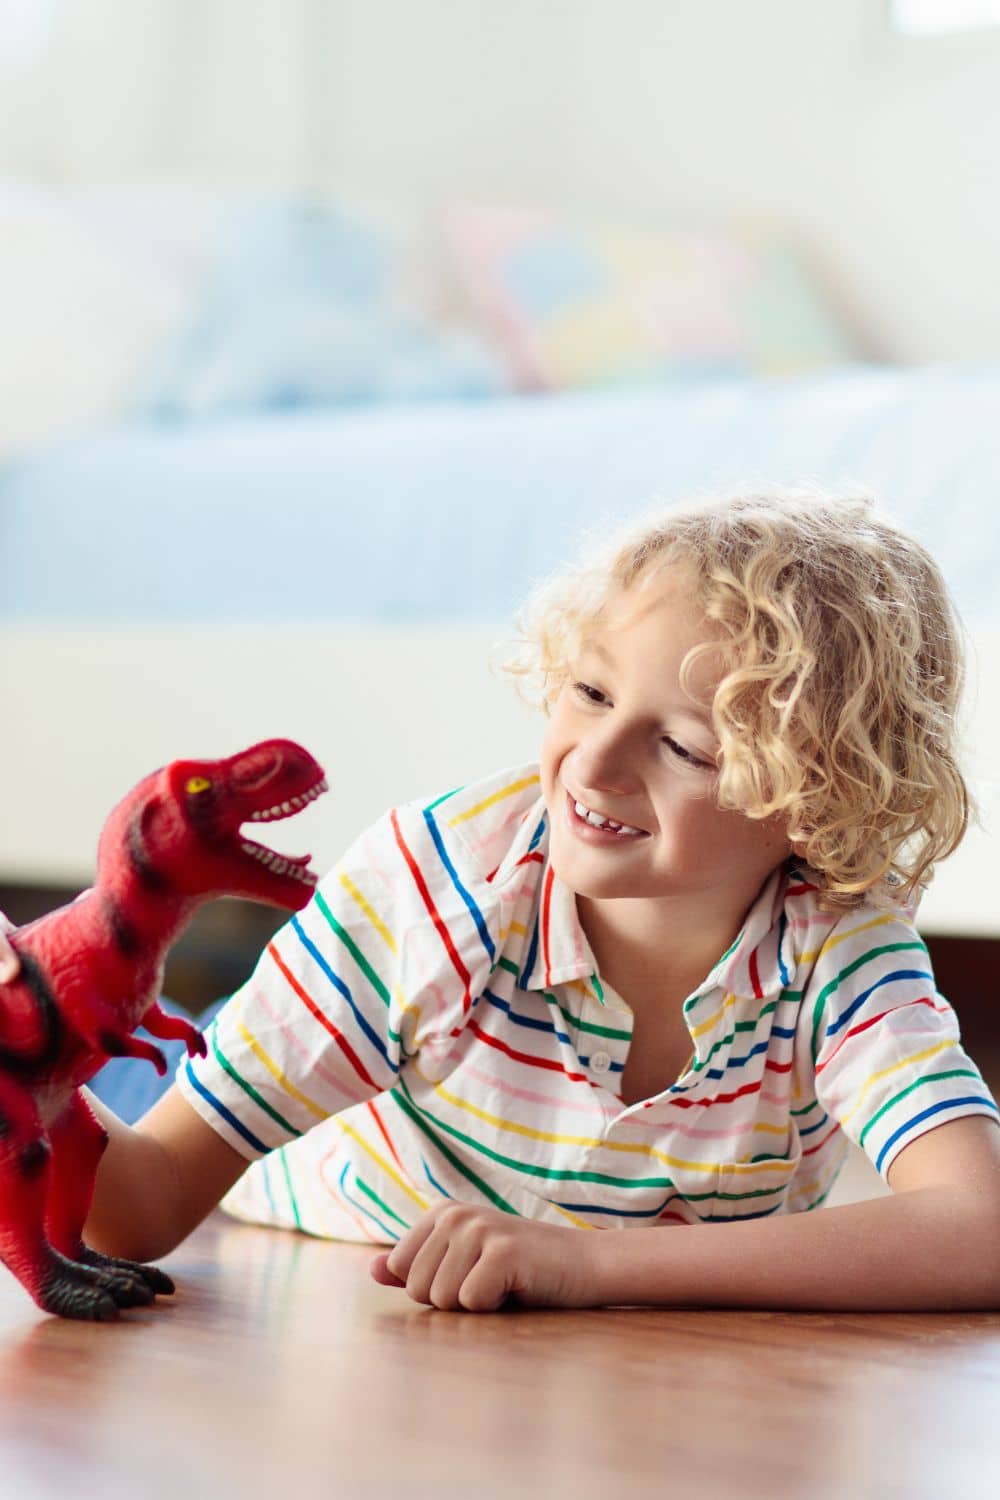 5 Reasons to Nurture Your Child's Dinosaur Interest